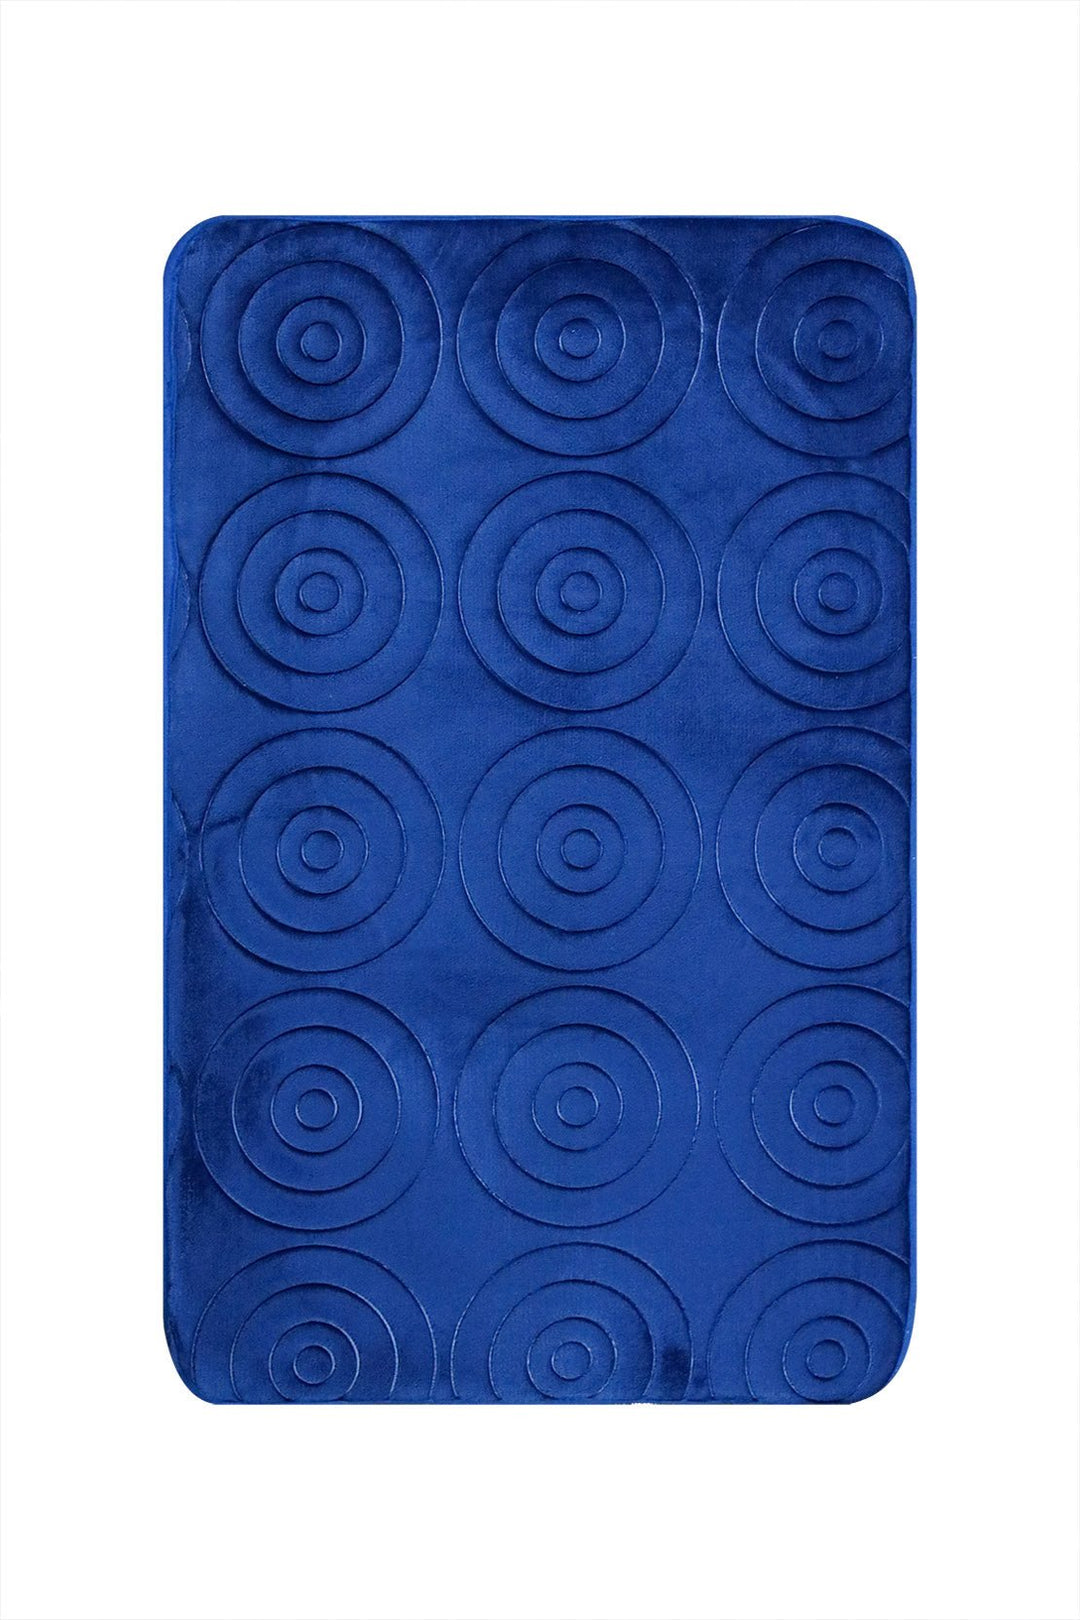 Set of Comfort Bath Mat, Blue - V Surfaces